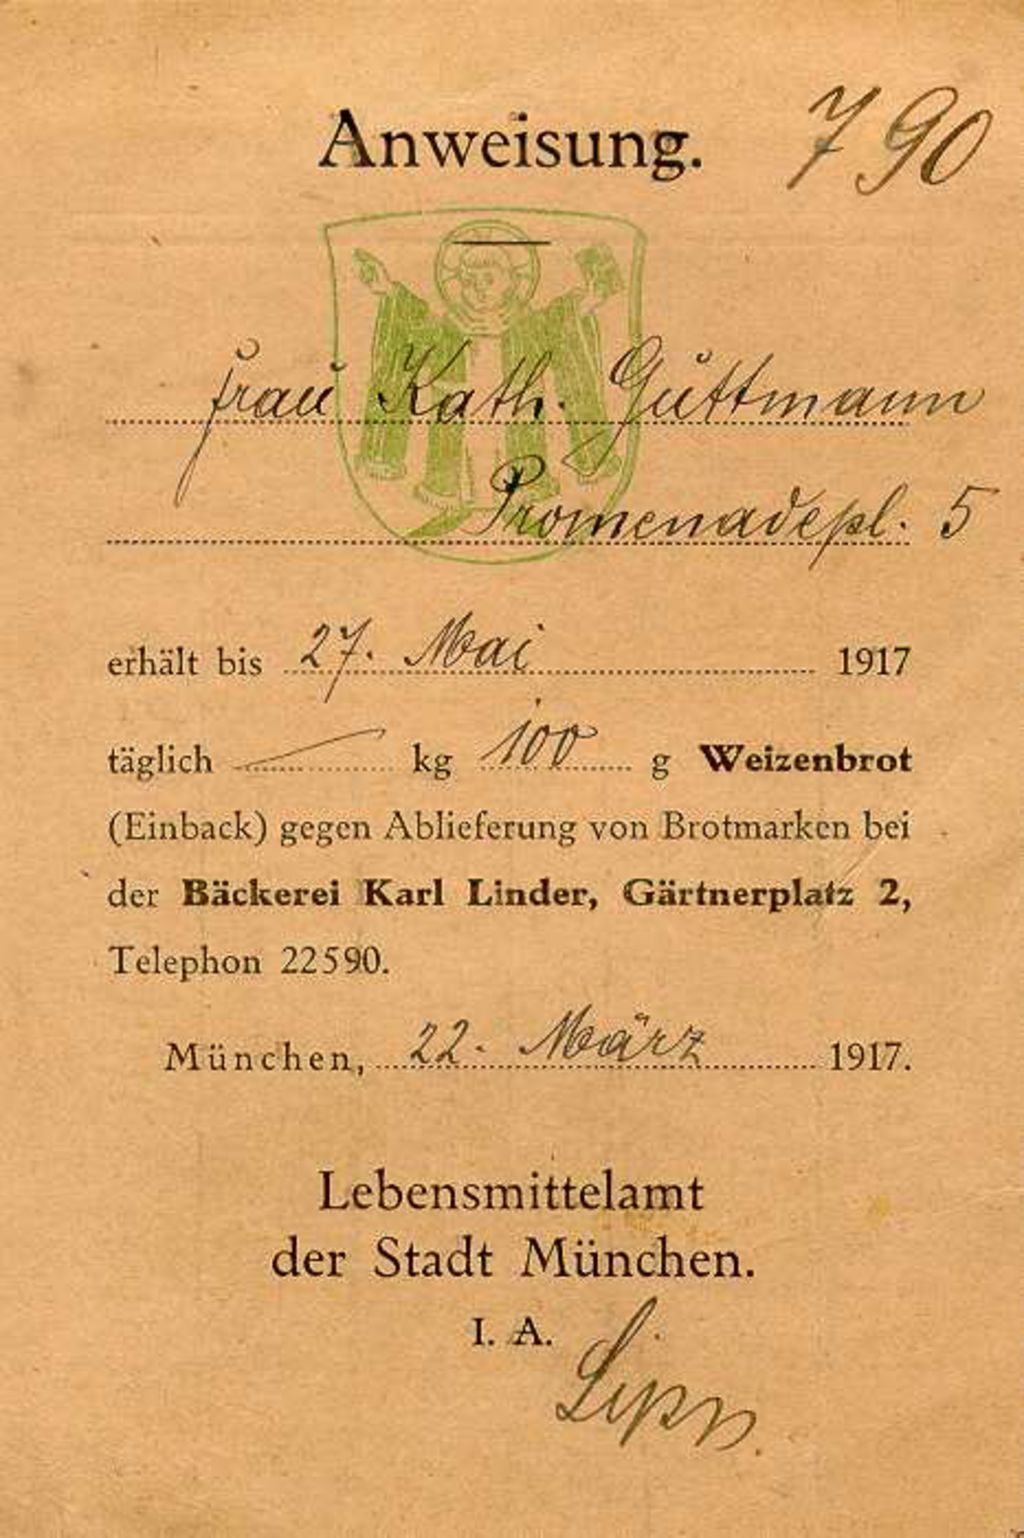 Druckschrift:"Anweisung zum Erhalt von Weizenbrot gegen Brotmarken", 1917